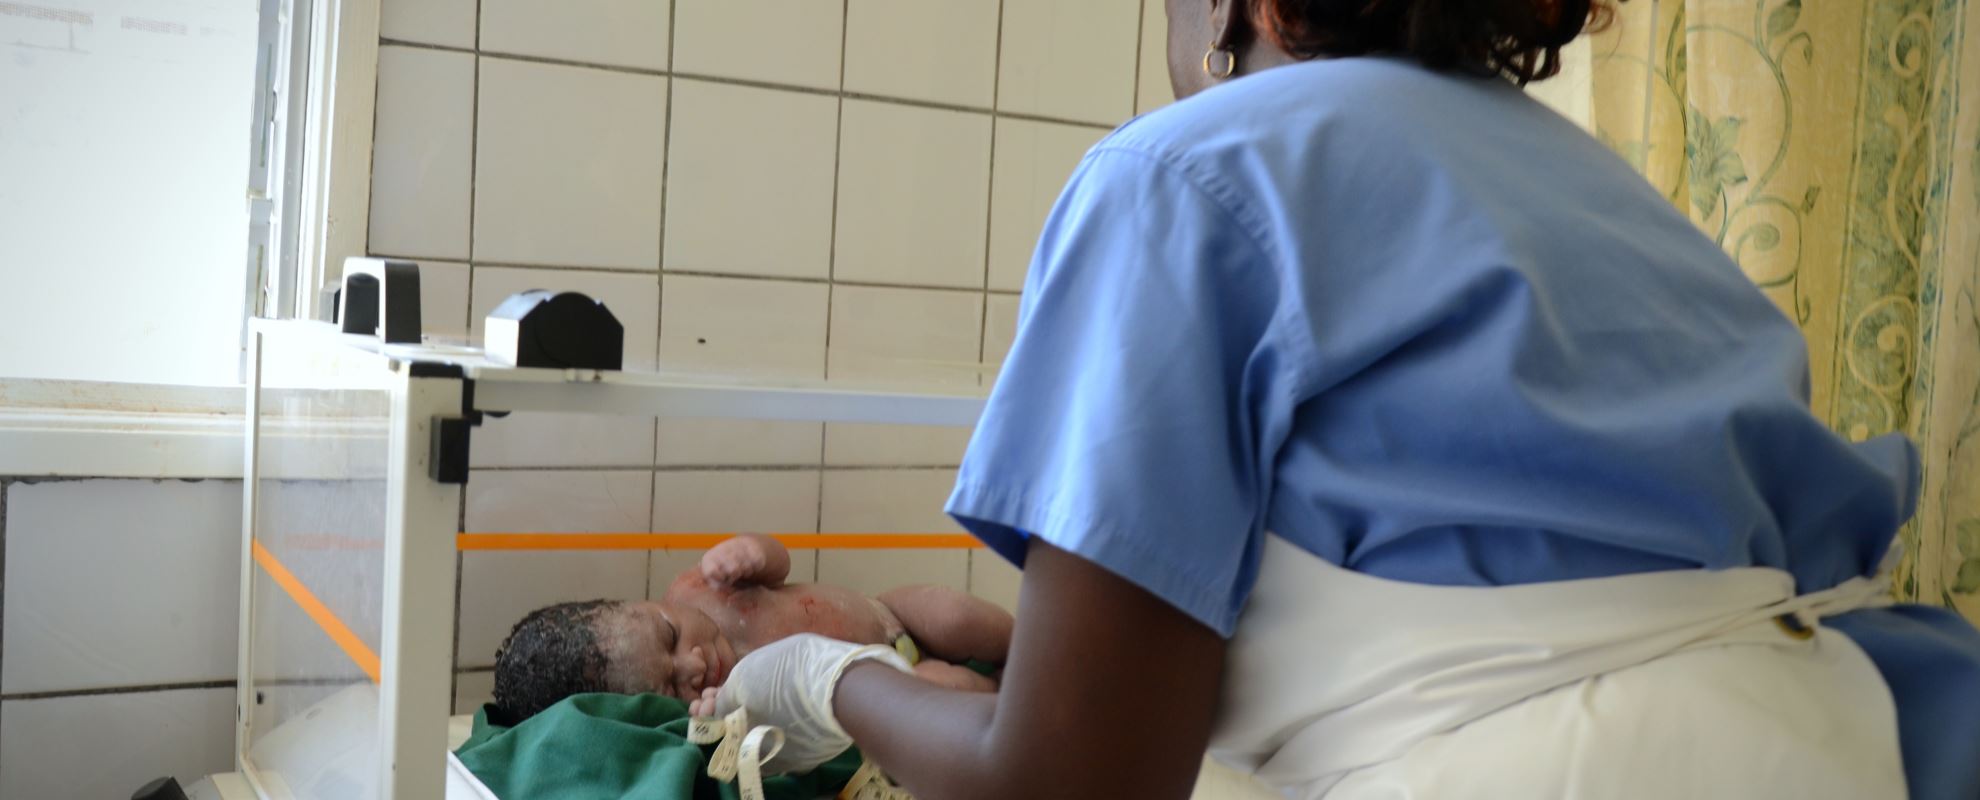 Mariama sørger for at datteren til Isatou får omsorgen hun trenger. Foto: Claire Ladavicius